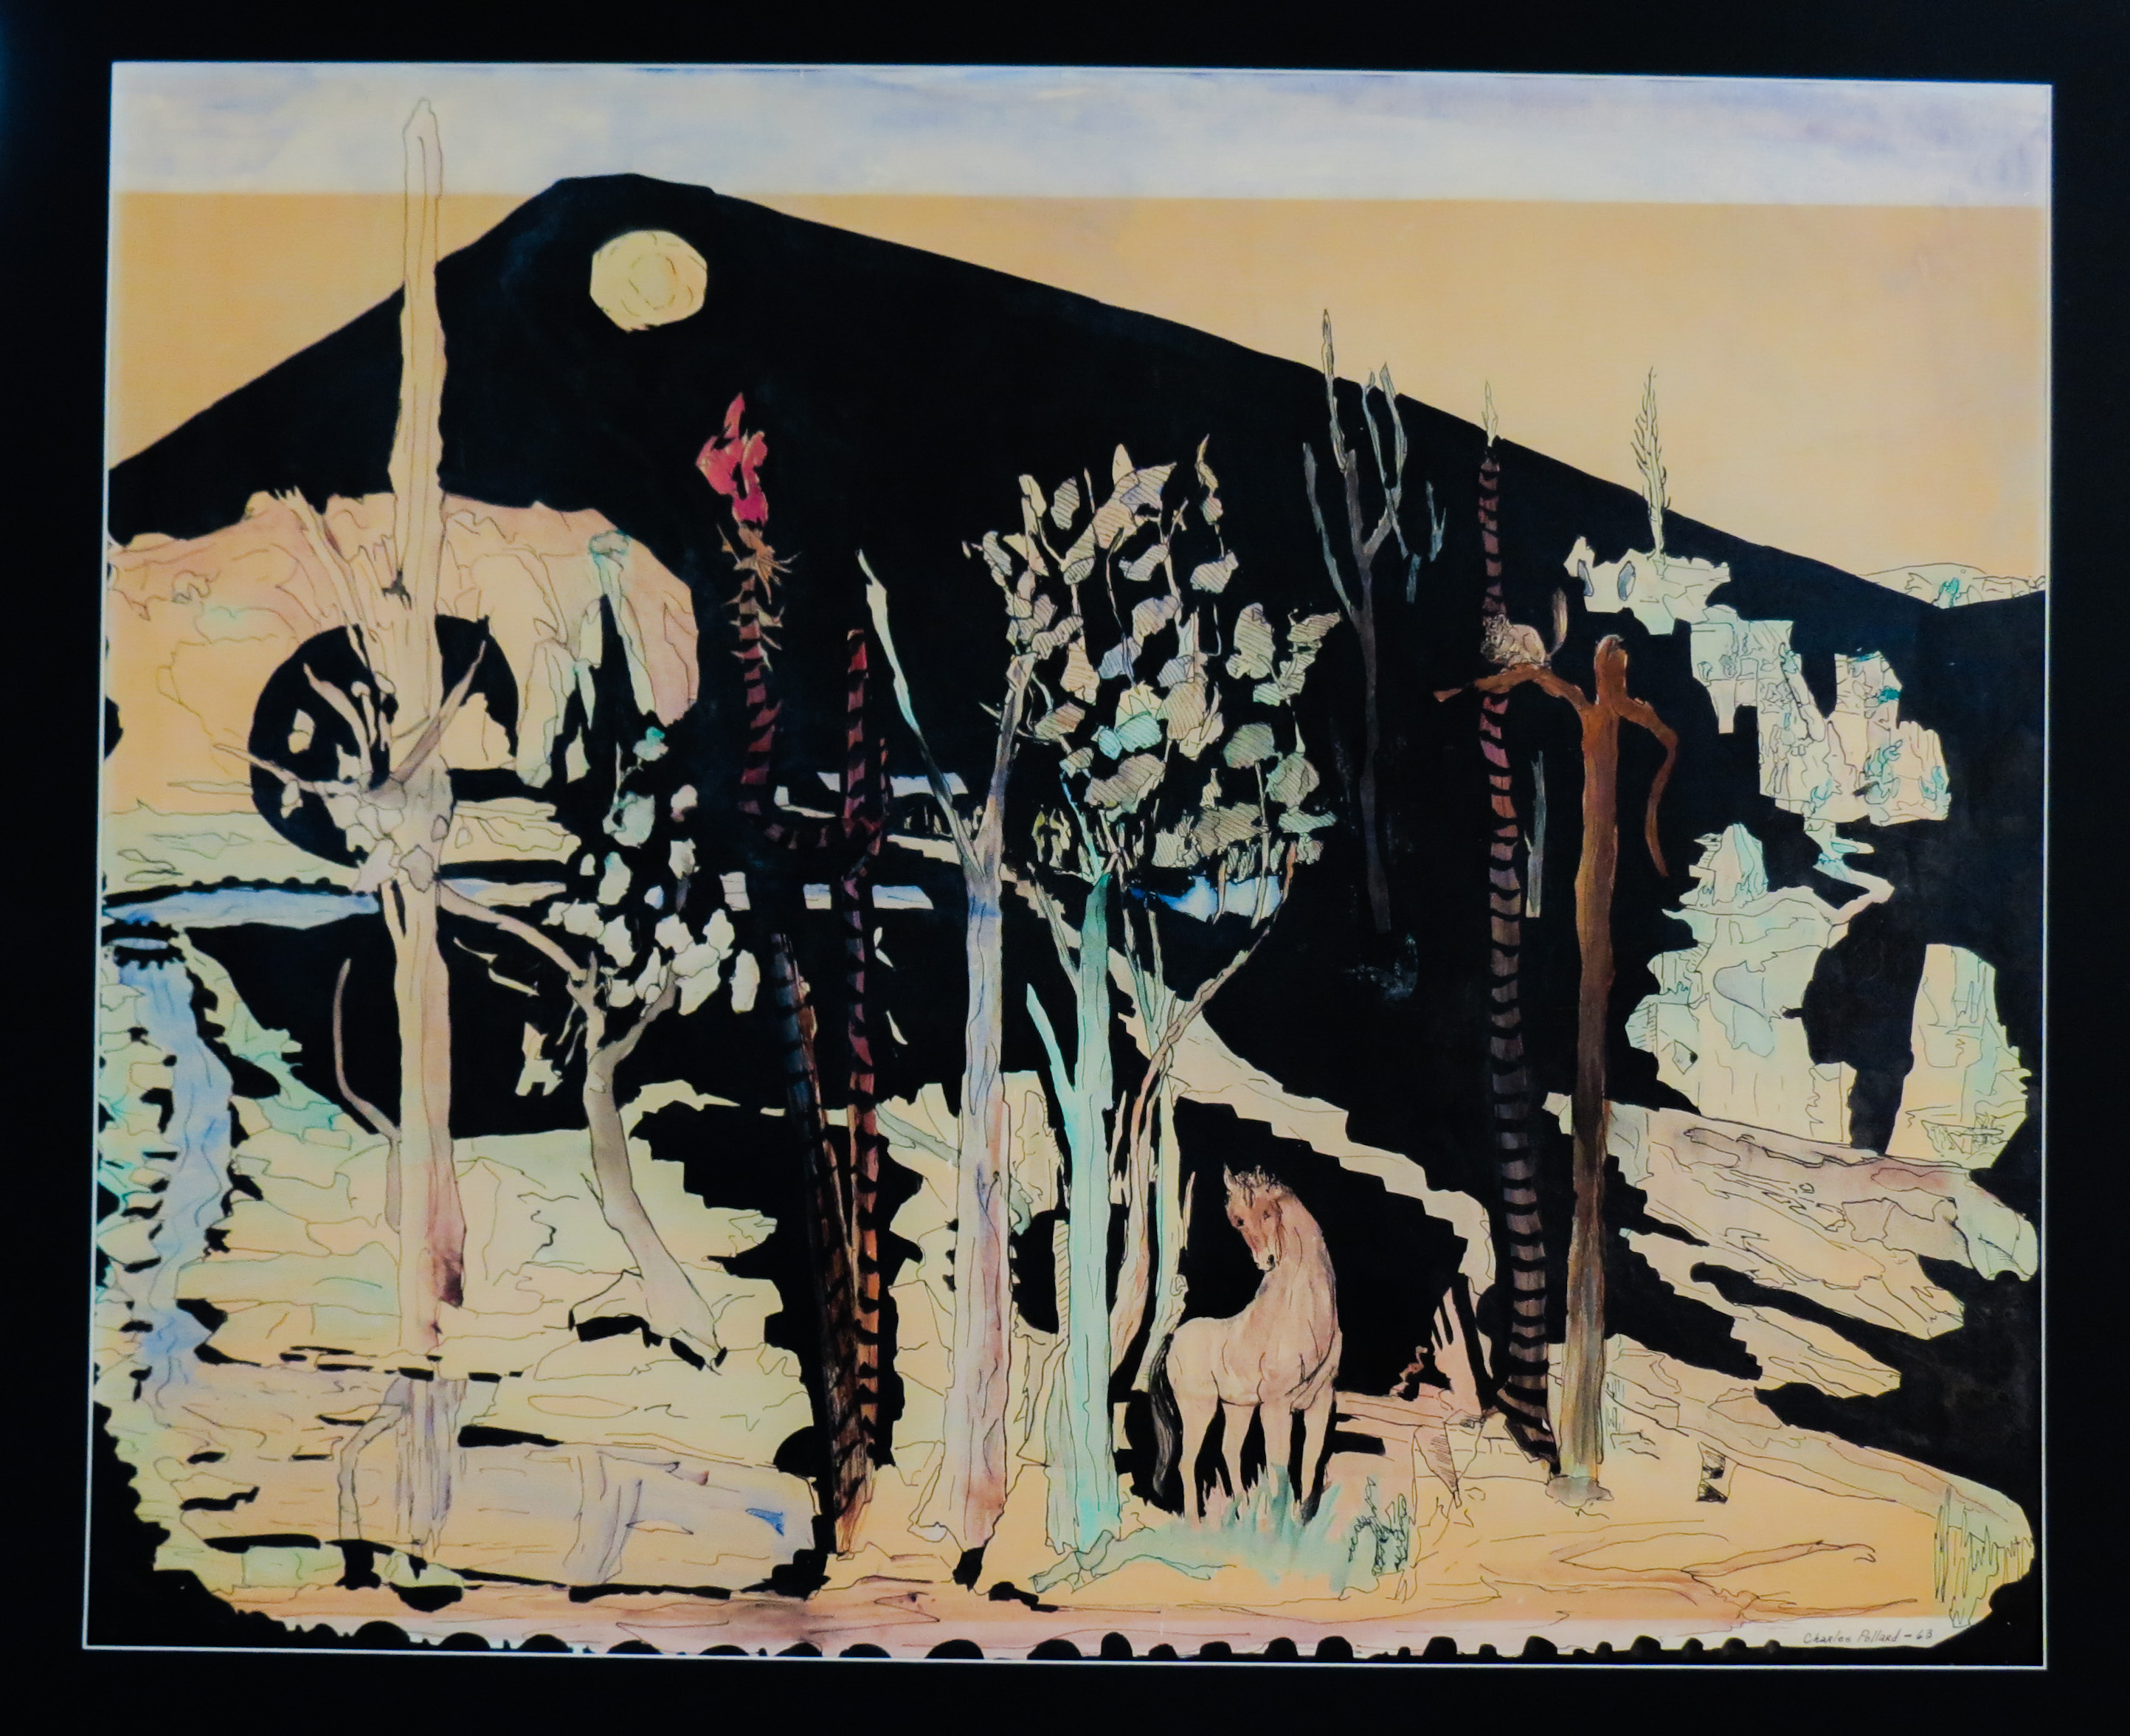 自然的孤寂 by 查尔斯 波拉德 - 1960年代 - 24 x 30 英寸 